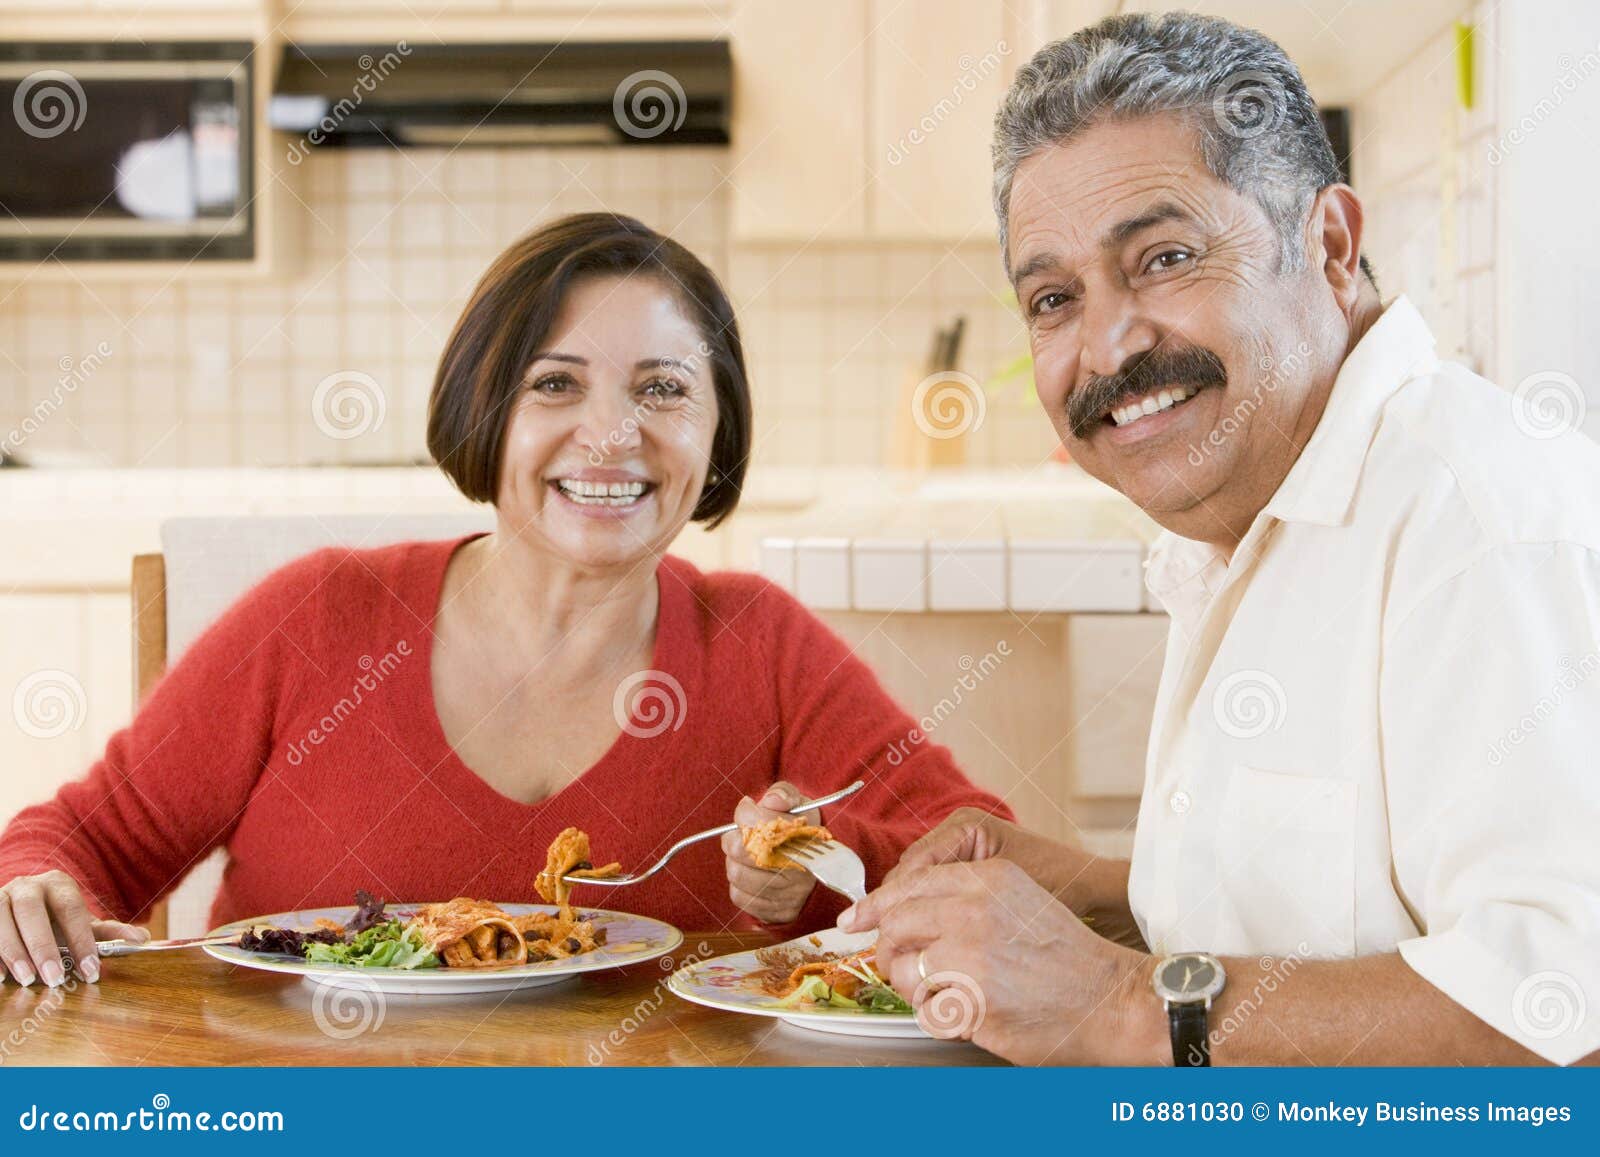 elderly couple enjoying meal,mealtime together